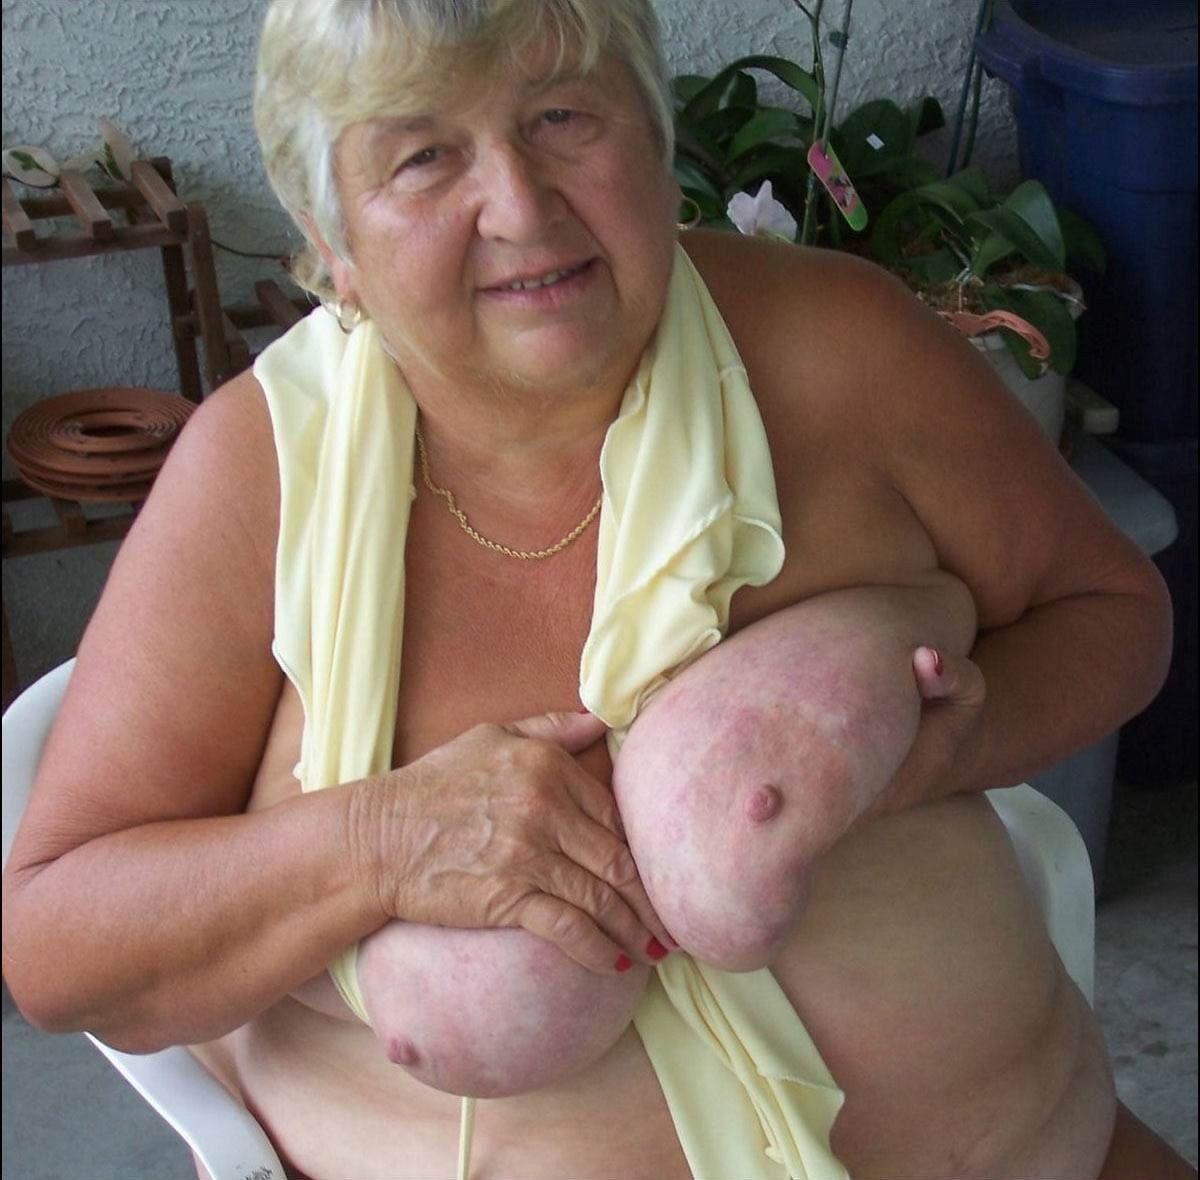 Stats reccomend big old granny tits